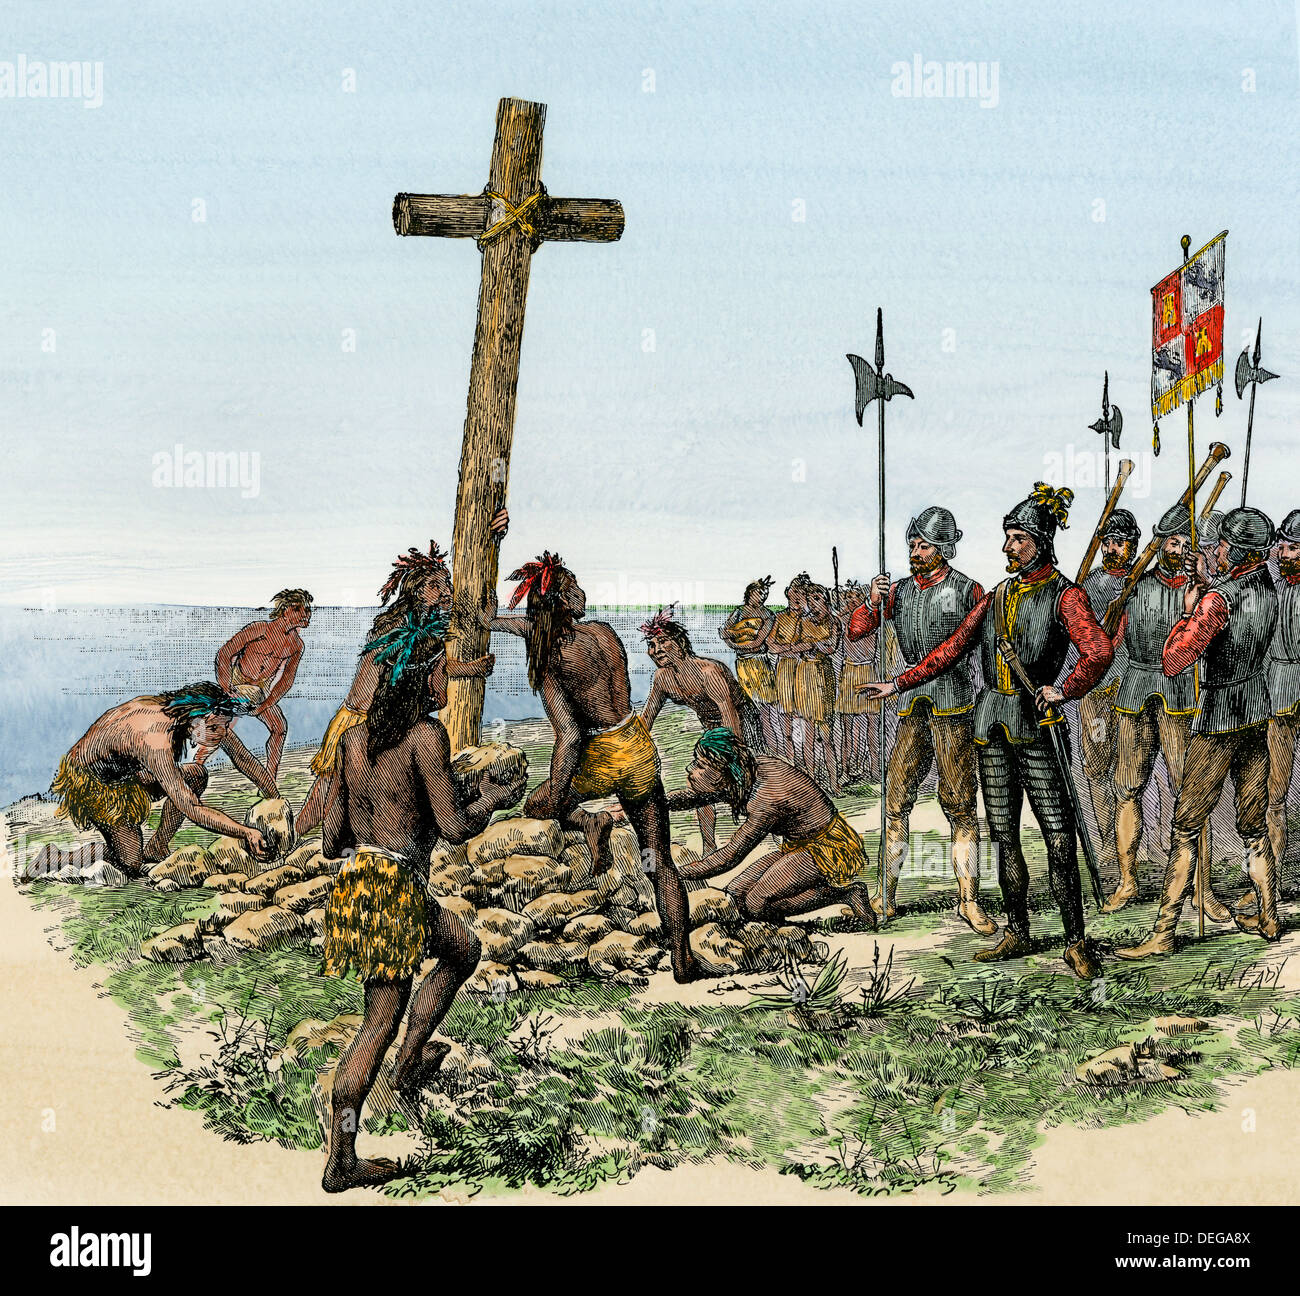 L'expédition de Balboa élever une croix sur la rive de l'océan Pacifique, 1513. À la main, gravure sur bois Banque D'Images